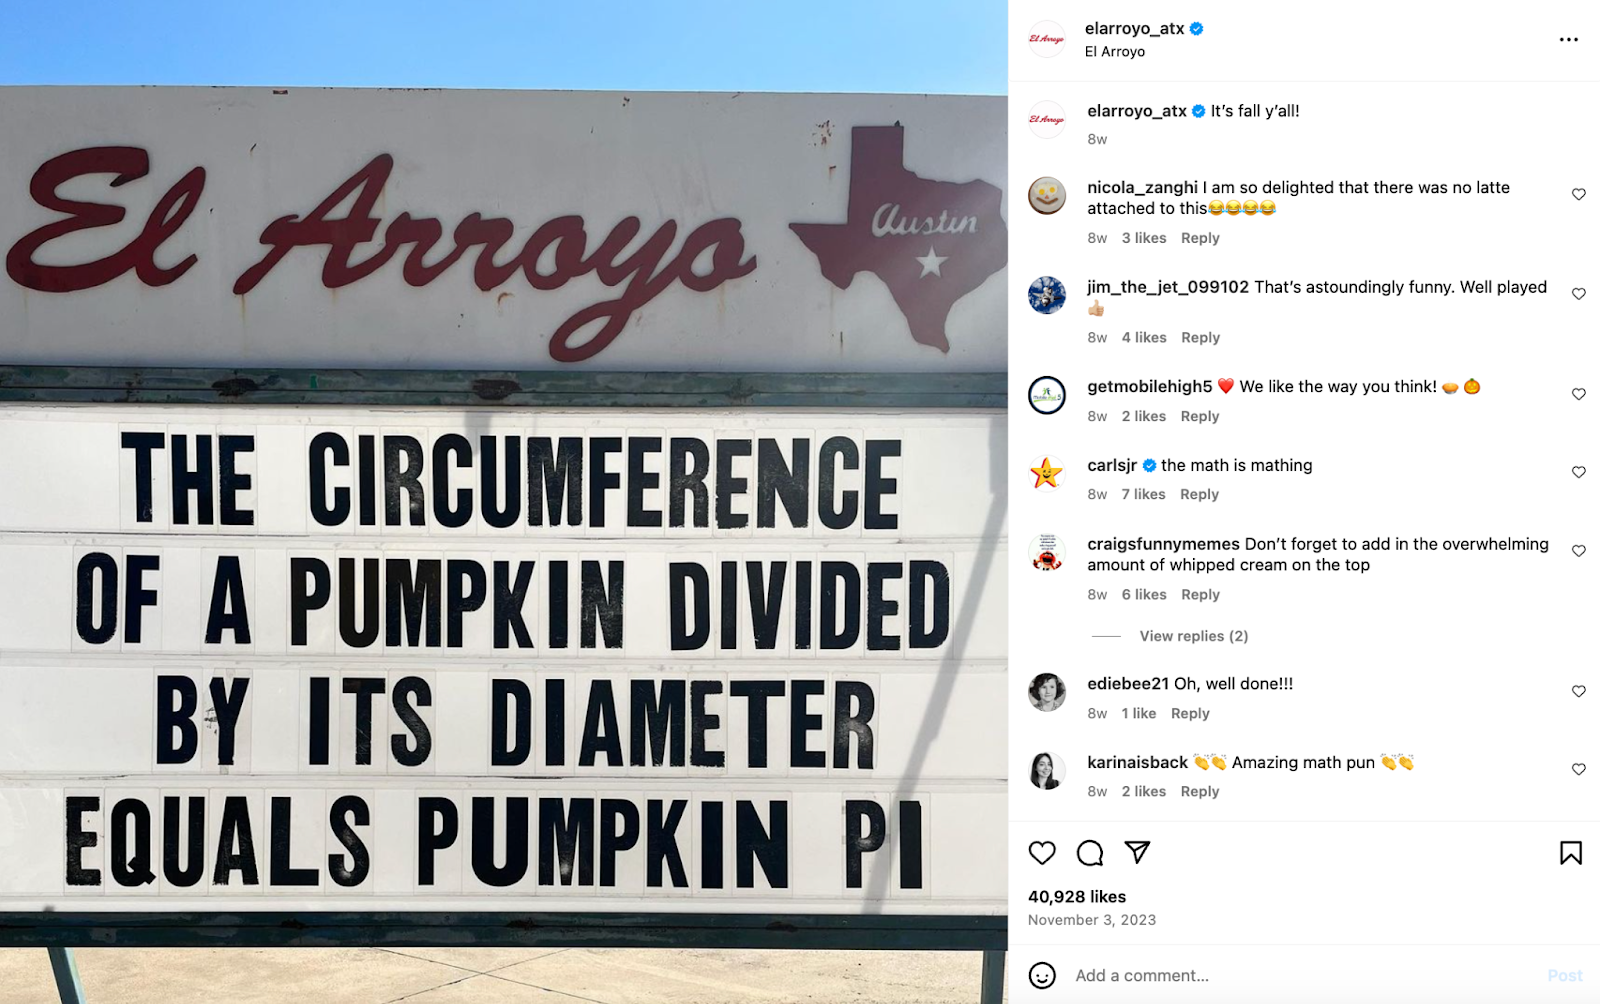 Ideas creativas de marketing para restaurantes: El restaurante El Arroyo, con sede en Austin, es famoso por su cartel de marquesina que muestra dichos y chistes descarados.